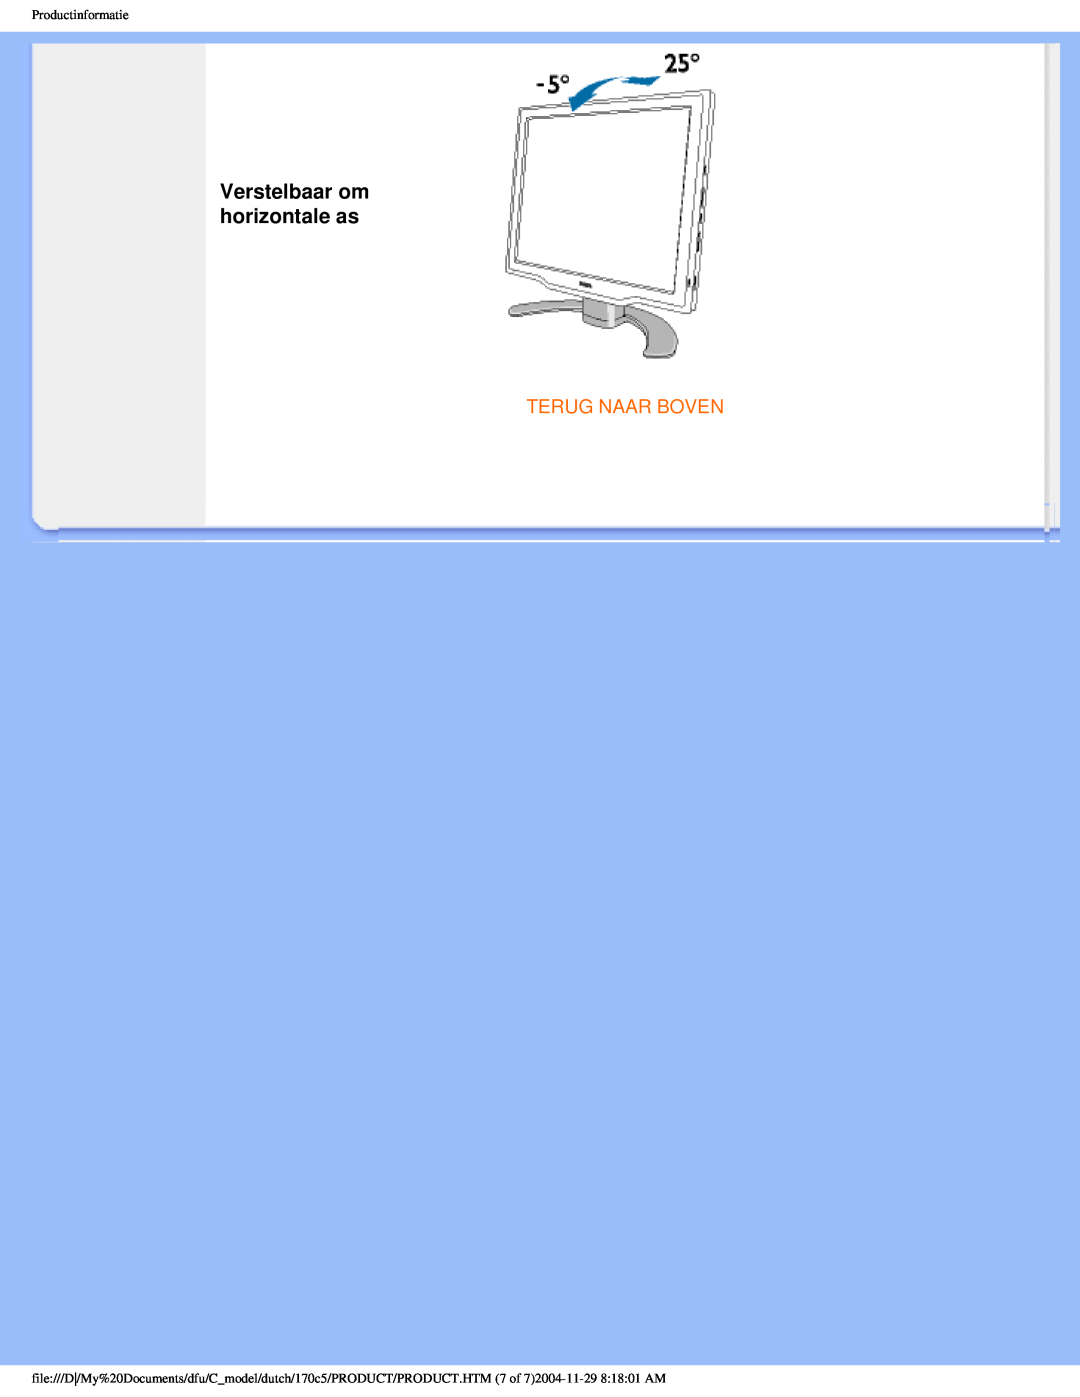 Philips 170C5 user manual Verstelbaar om horizontale as, Terug Naar Boven, Productinformatie 